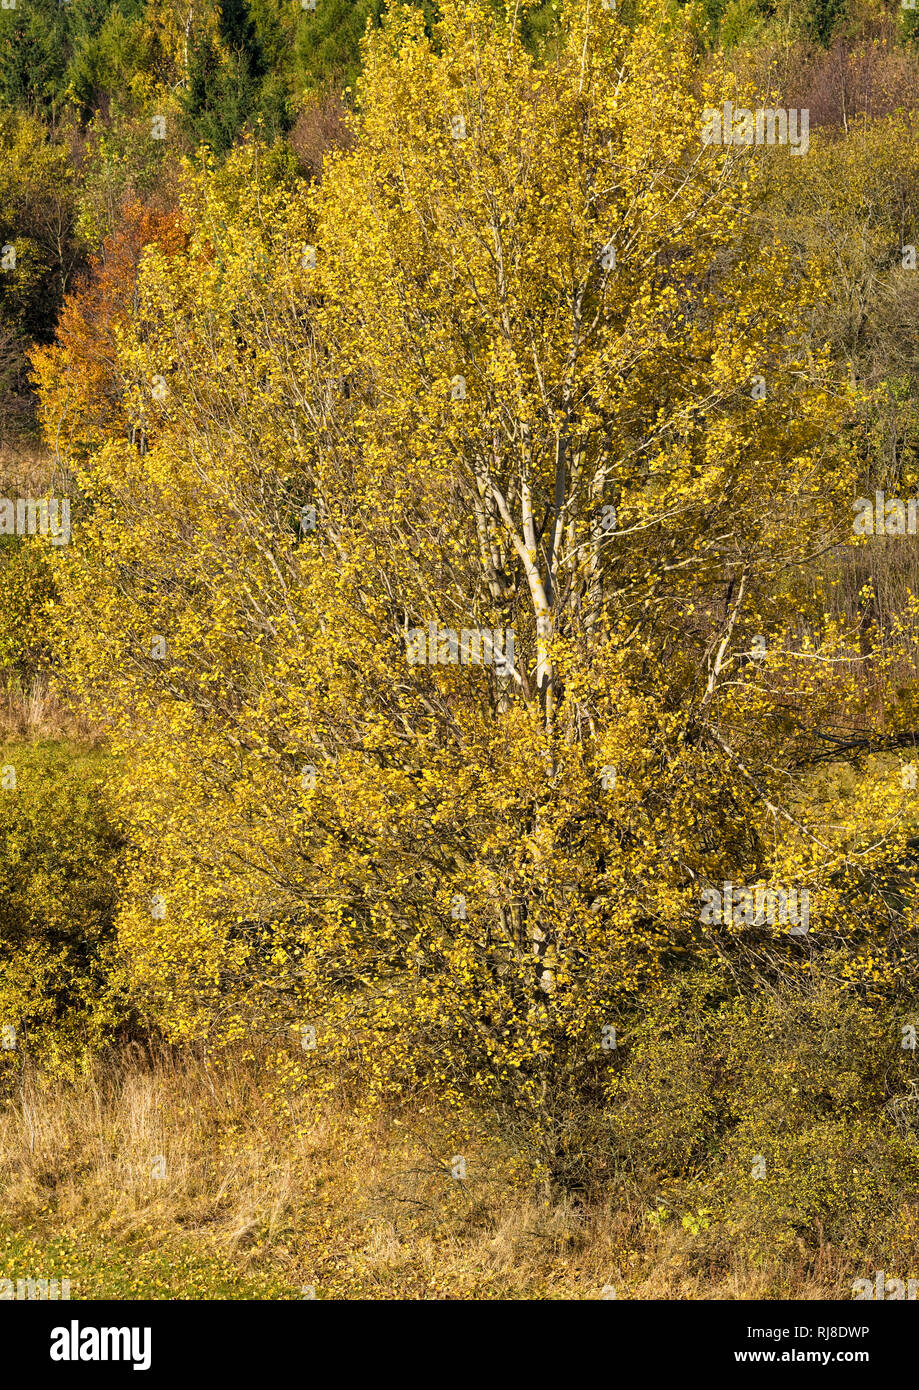 Deutschland, Bayern, Naturpark Bayrische Rhön, UNESCO-Biosphärenreservat, Naturschutzgebiet Schwarzes Moor, Espe im Herbstlaub, Stock Photo